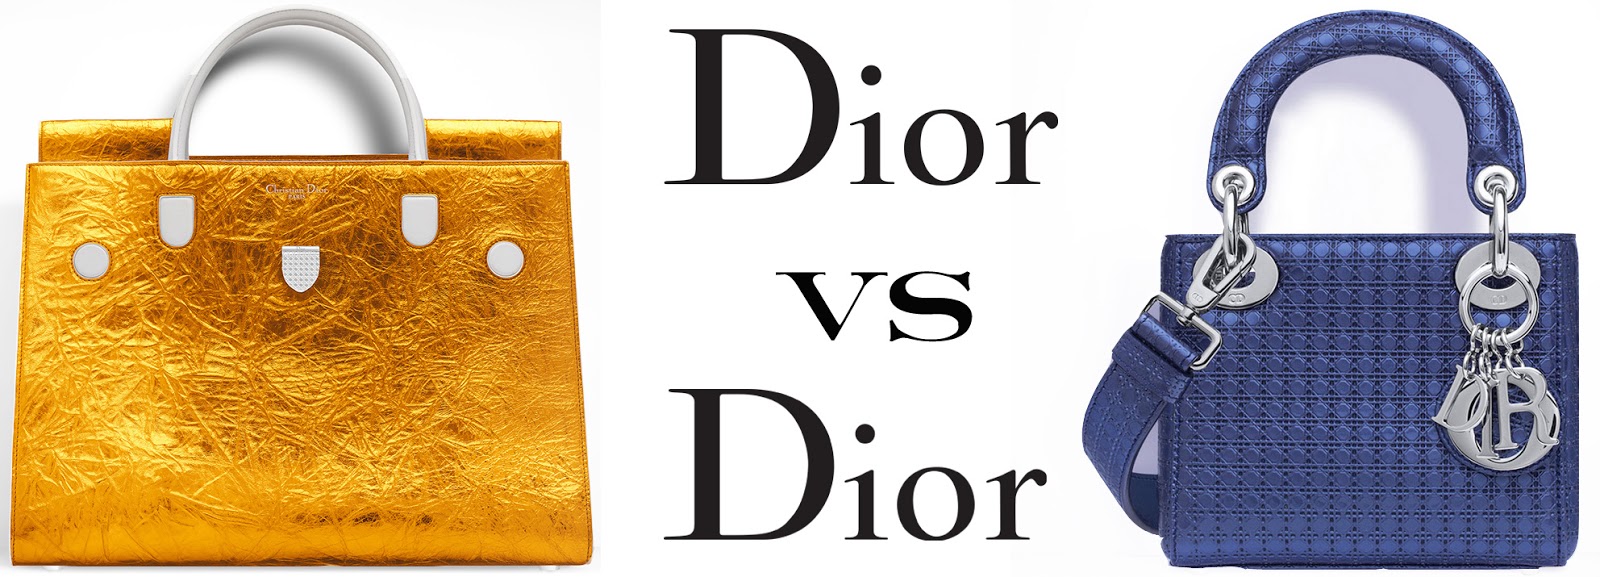 Eniwhere Fashion - Diorever vs Lady Dior